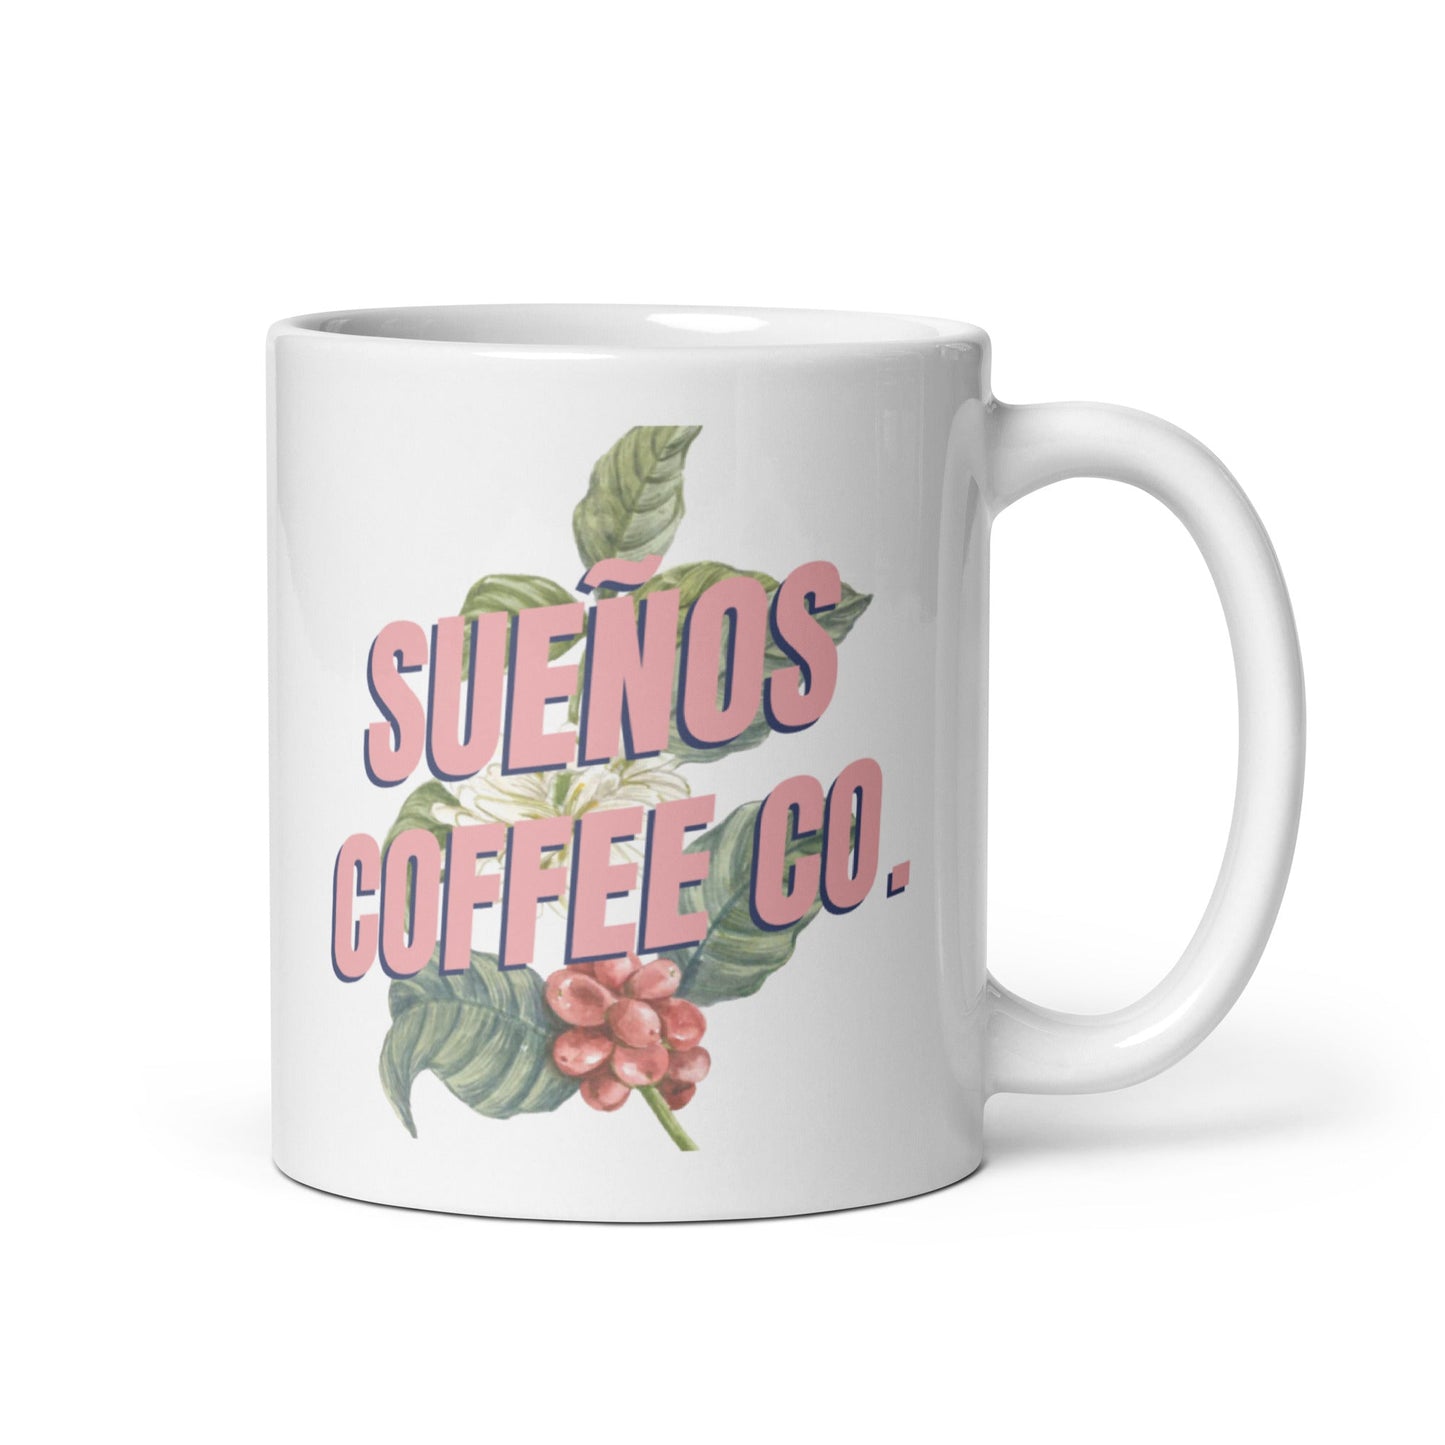 Sueños Coffee Co. Logo Mug - Sueños Coffee Co. Sueños Coffee Co. Home Decor